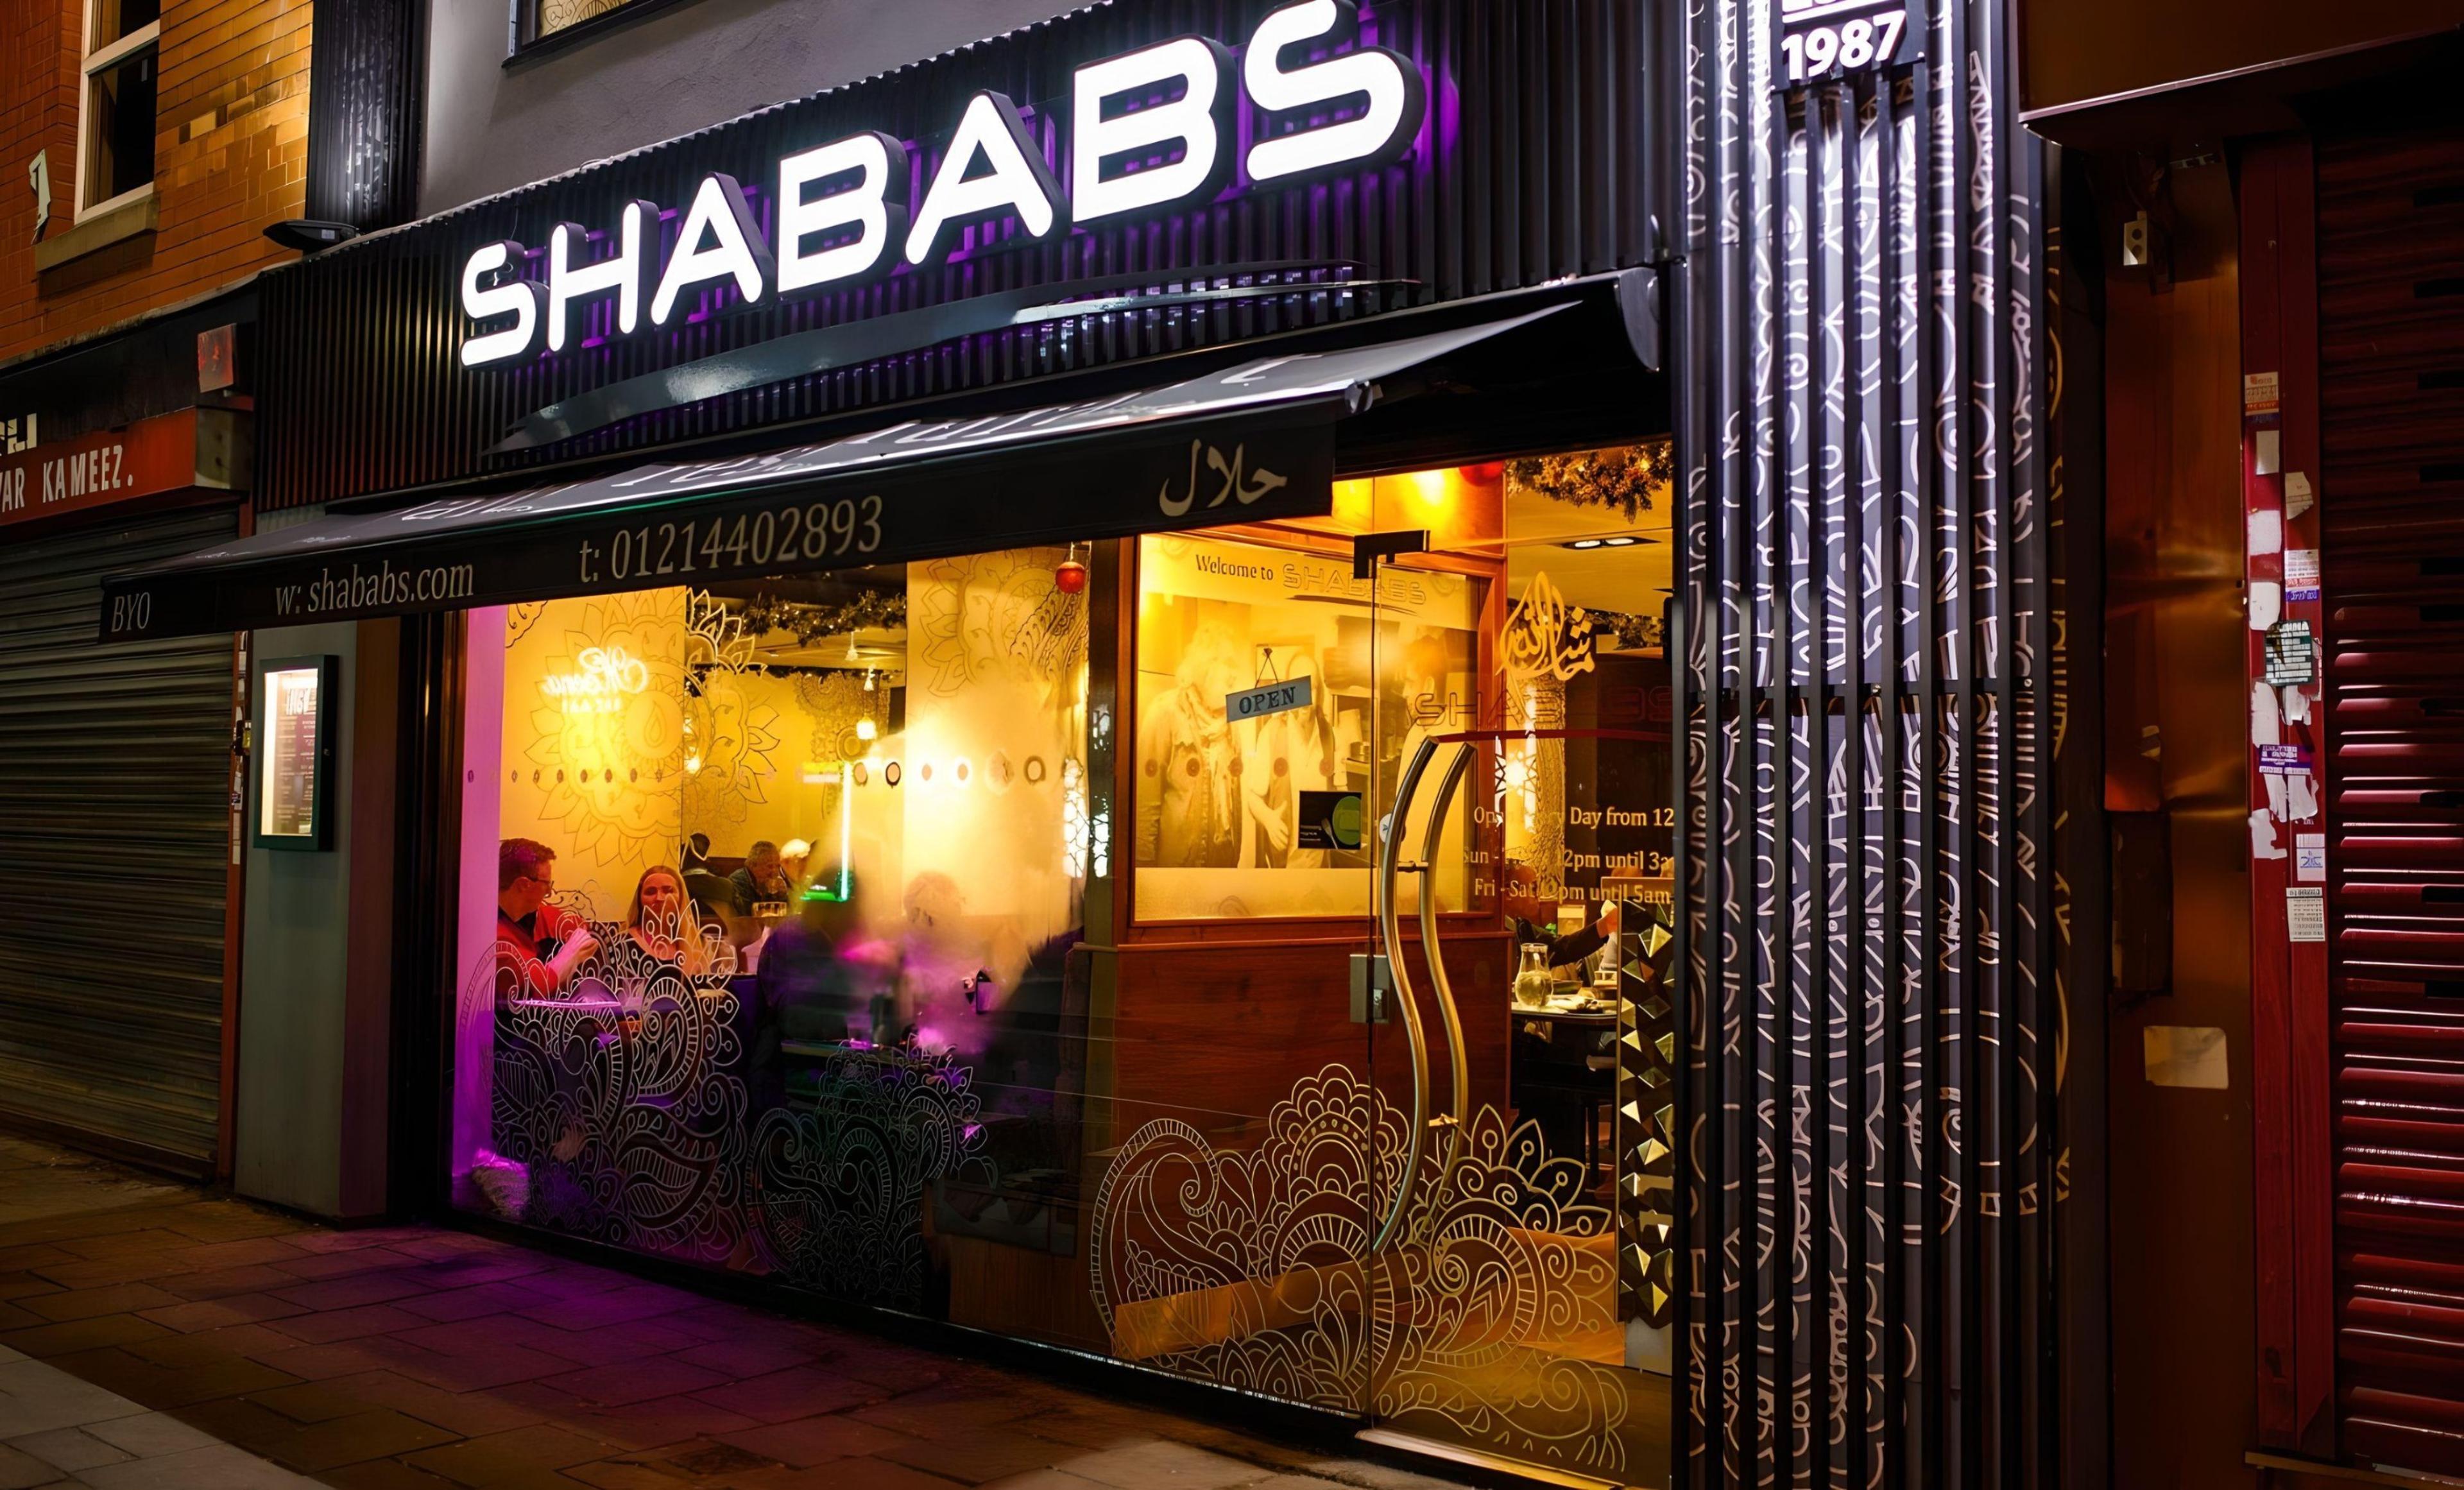 Shababs Balti Restaurant